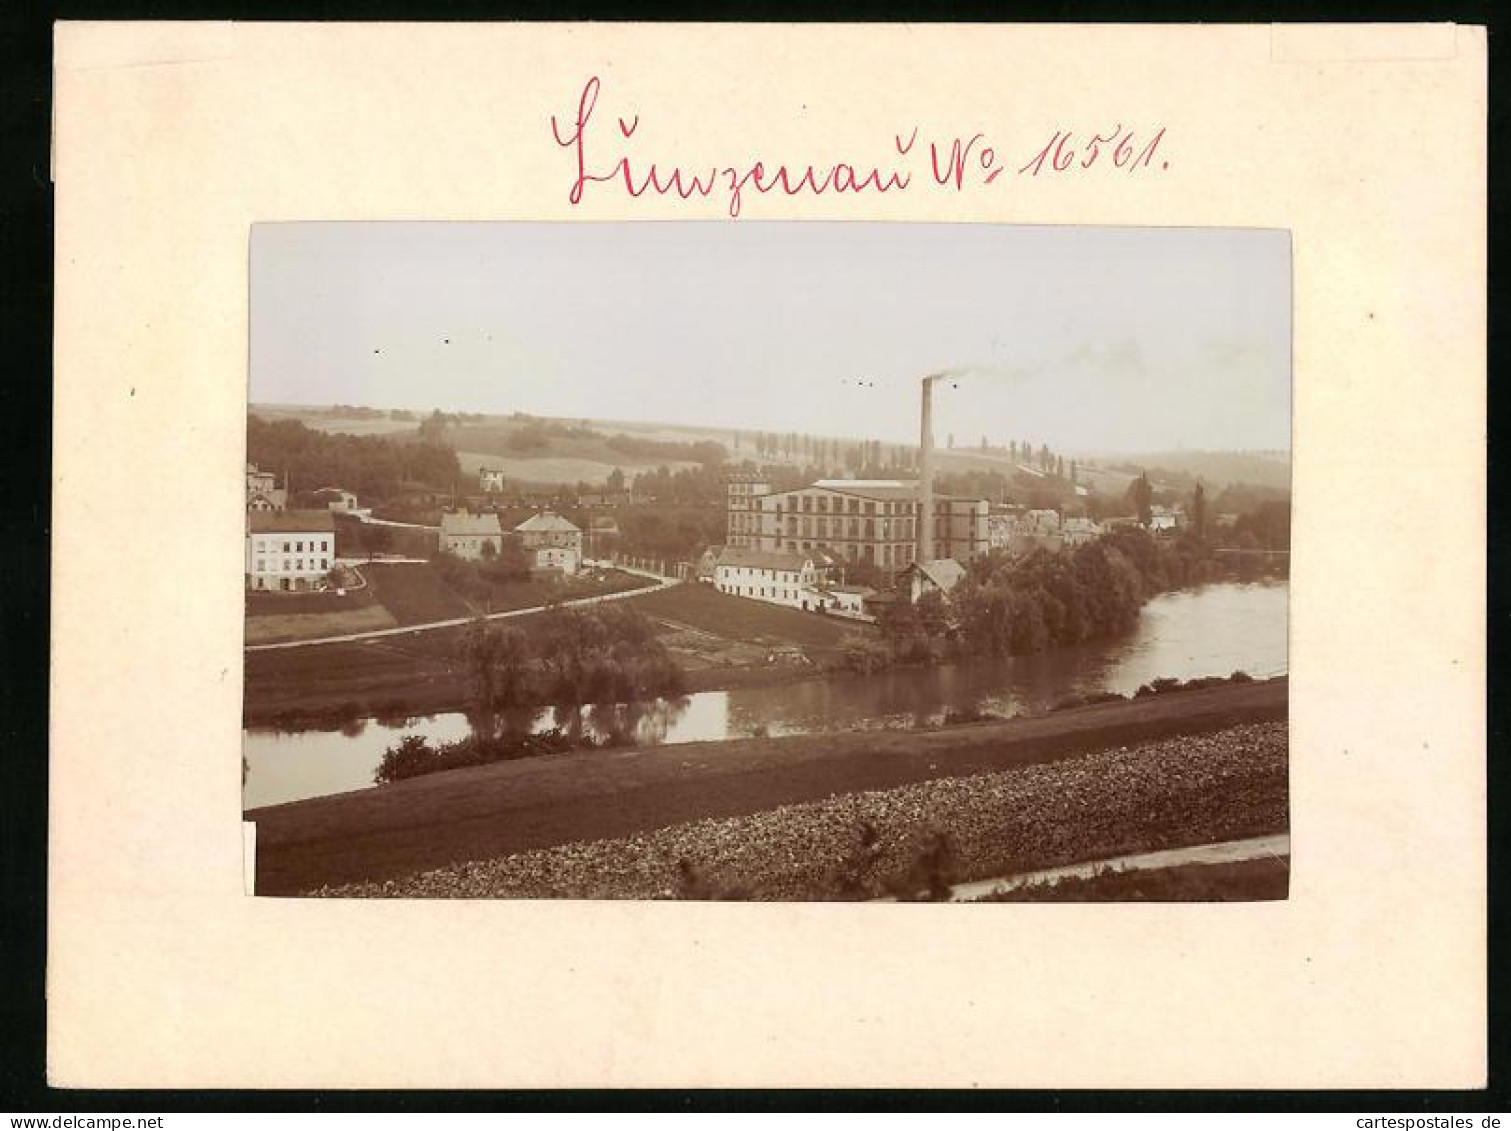 Fotografie Brück & Sohn Meissen, Ansicht Lunzenau, Fabrik Am Ufer Der Mulde  - Places